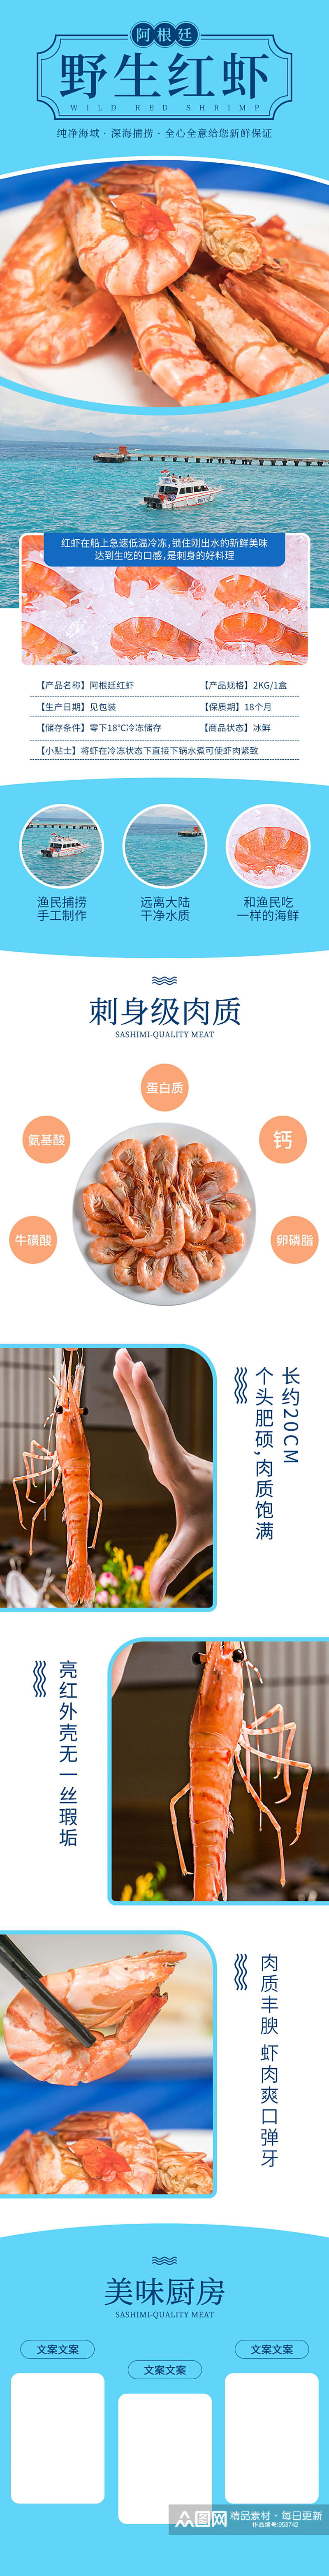 淘宝生鲜食品阿根廷红虾详情页素材